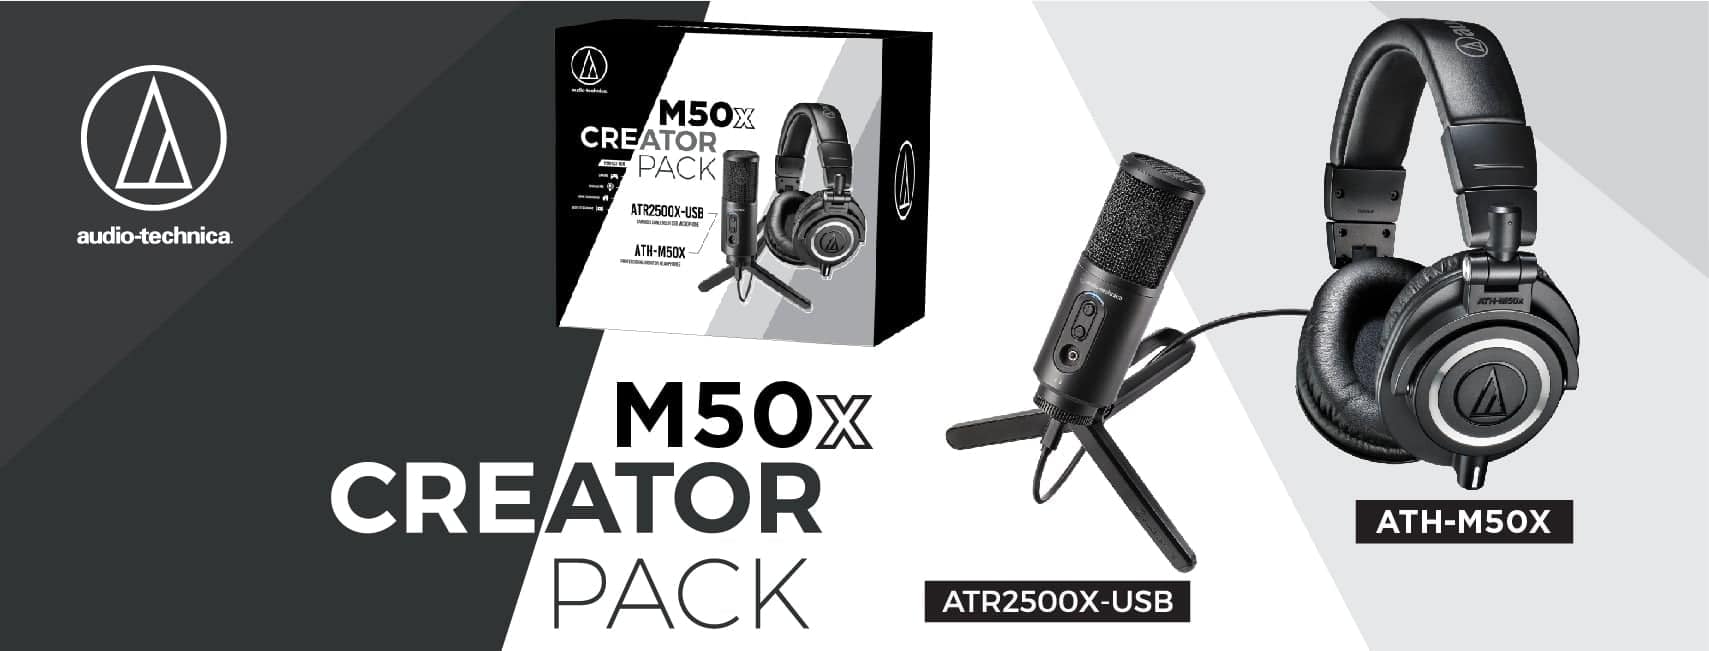 อาร์ทีบีฯ ส่ง M50x Creator Pack พร้อมไมโครโฟน Audio-Technica ATR2500X-USB เอาใจสาย Content Creator 1